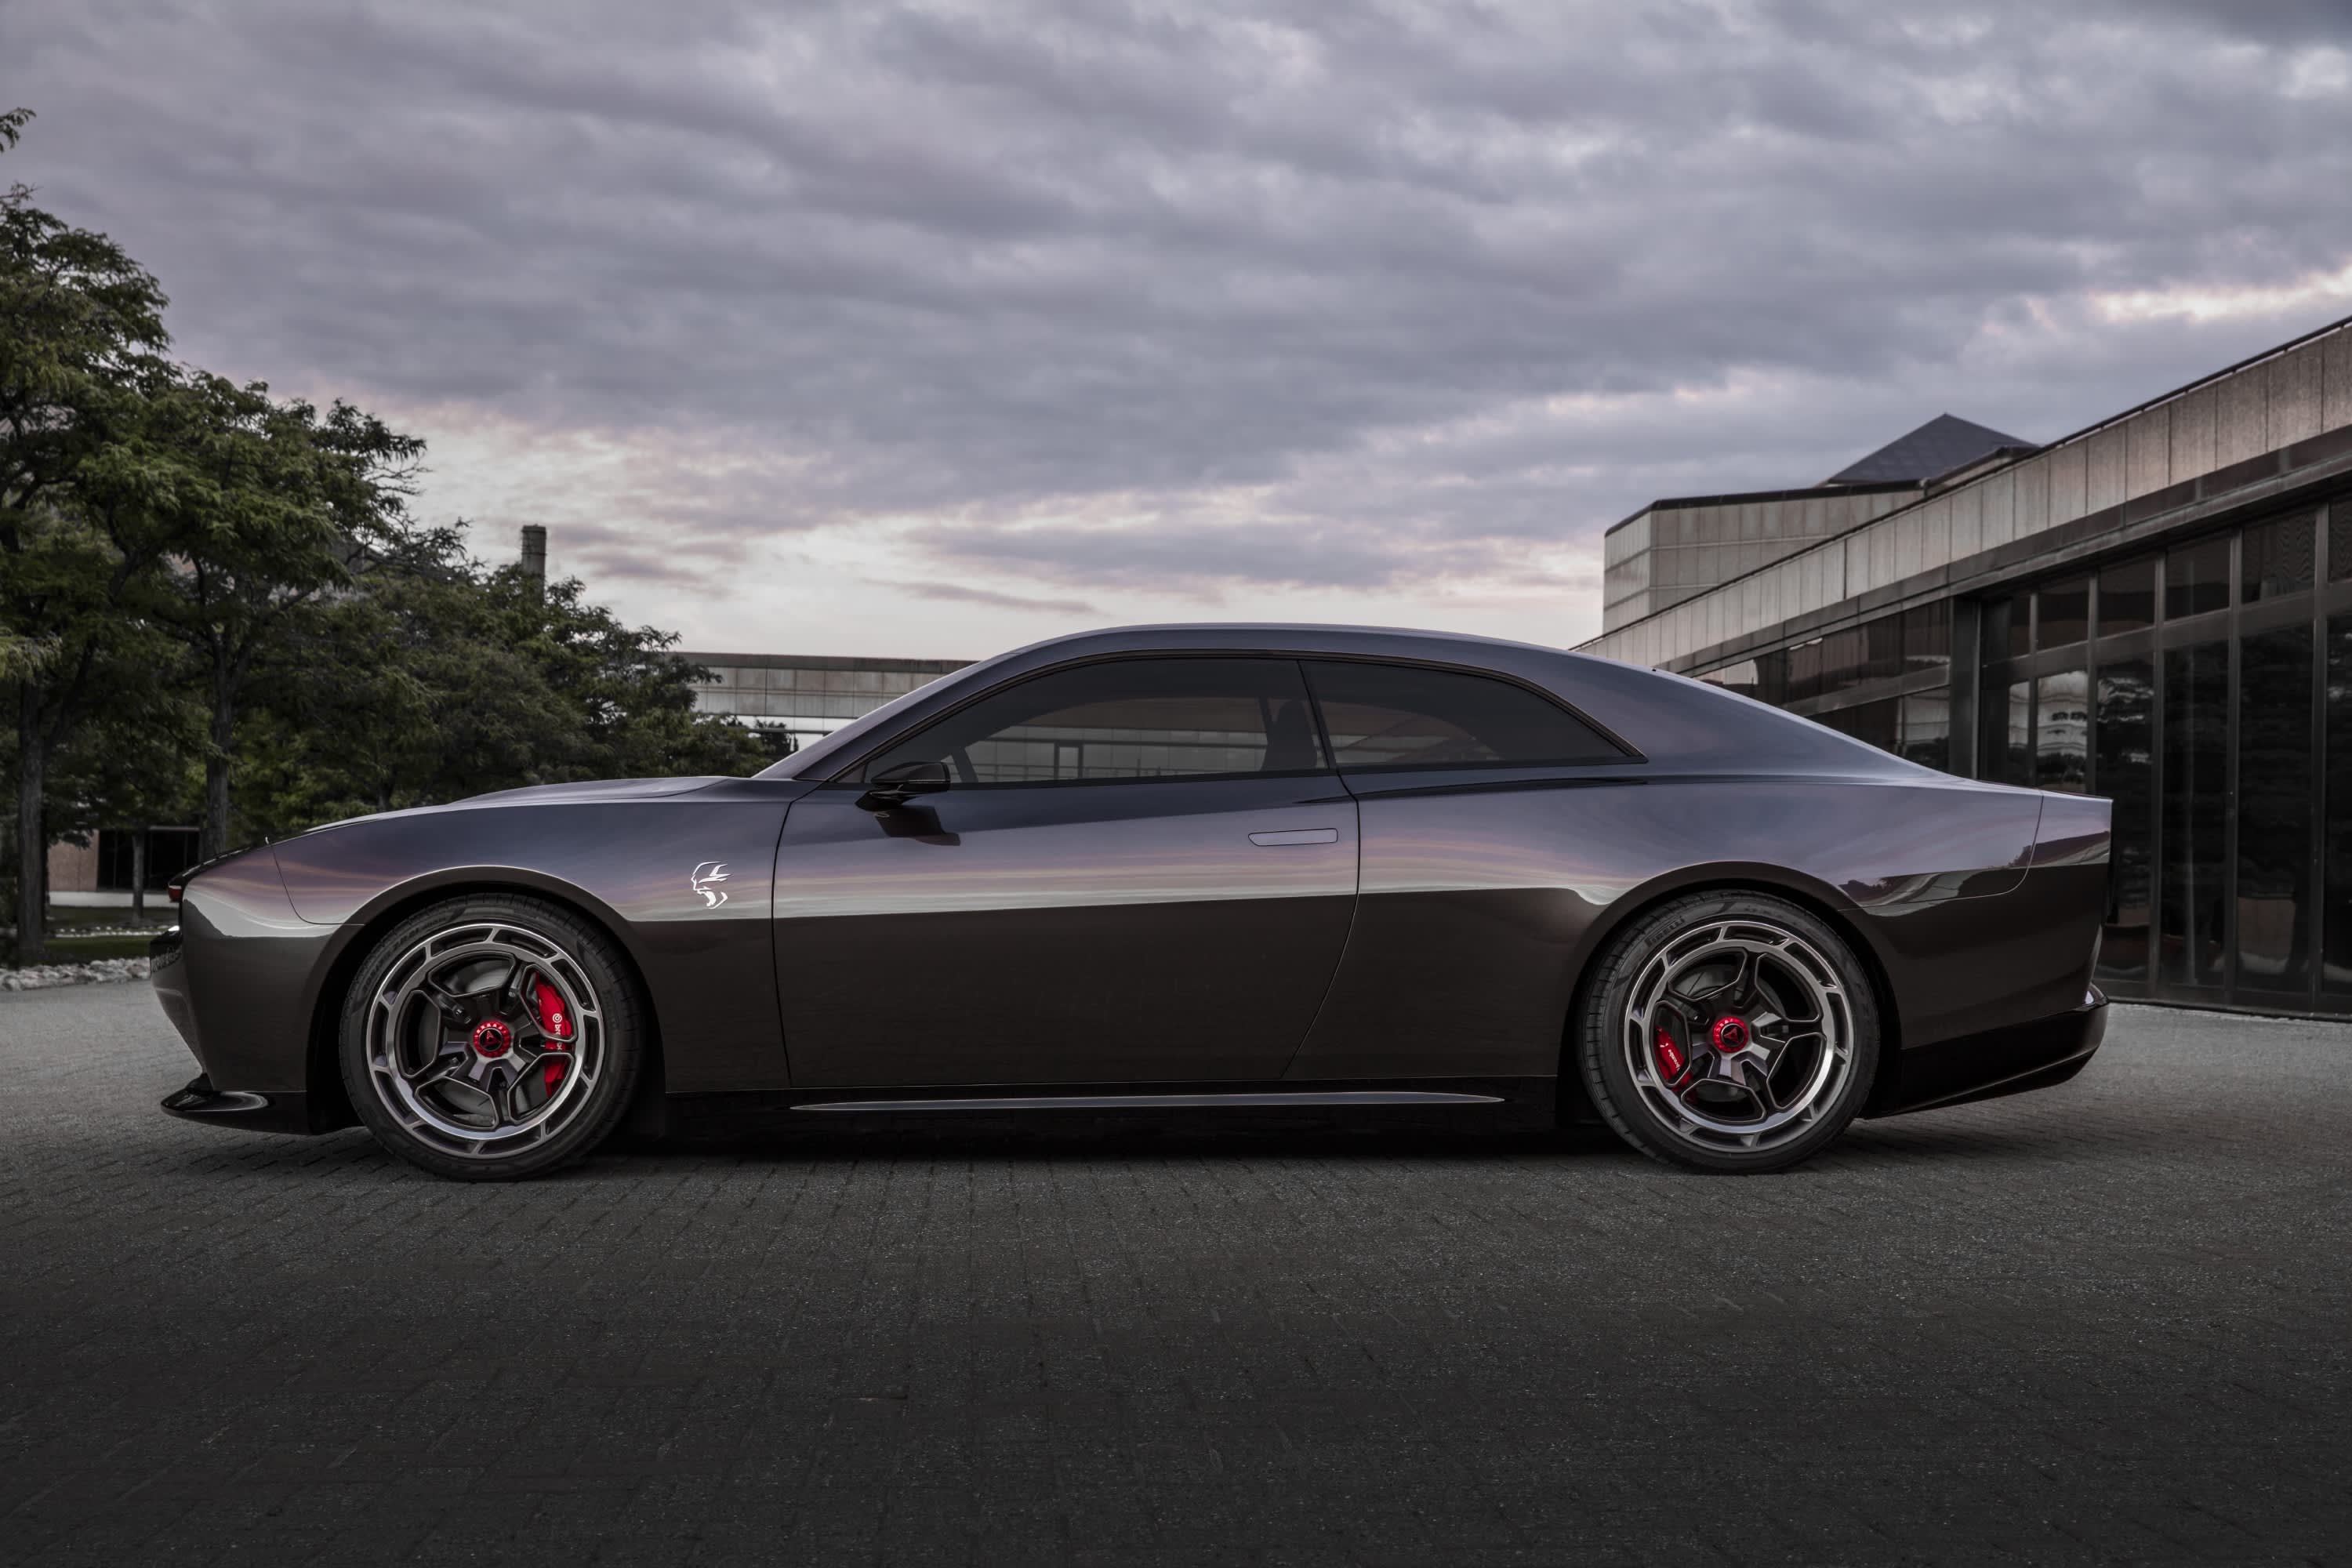 Dodge unveils electric muscle car concept Charger Daytona SRT